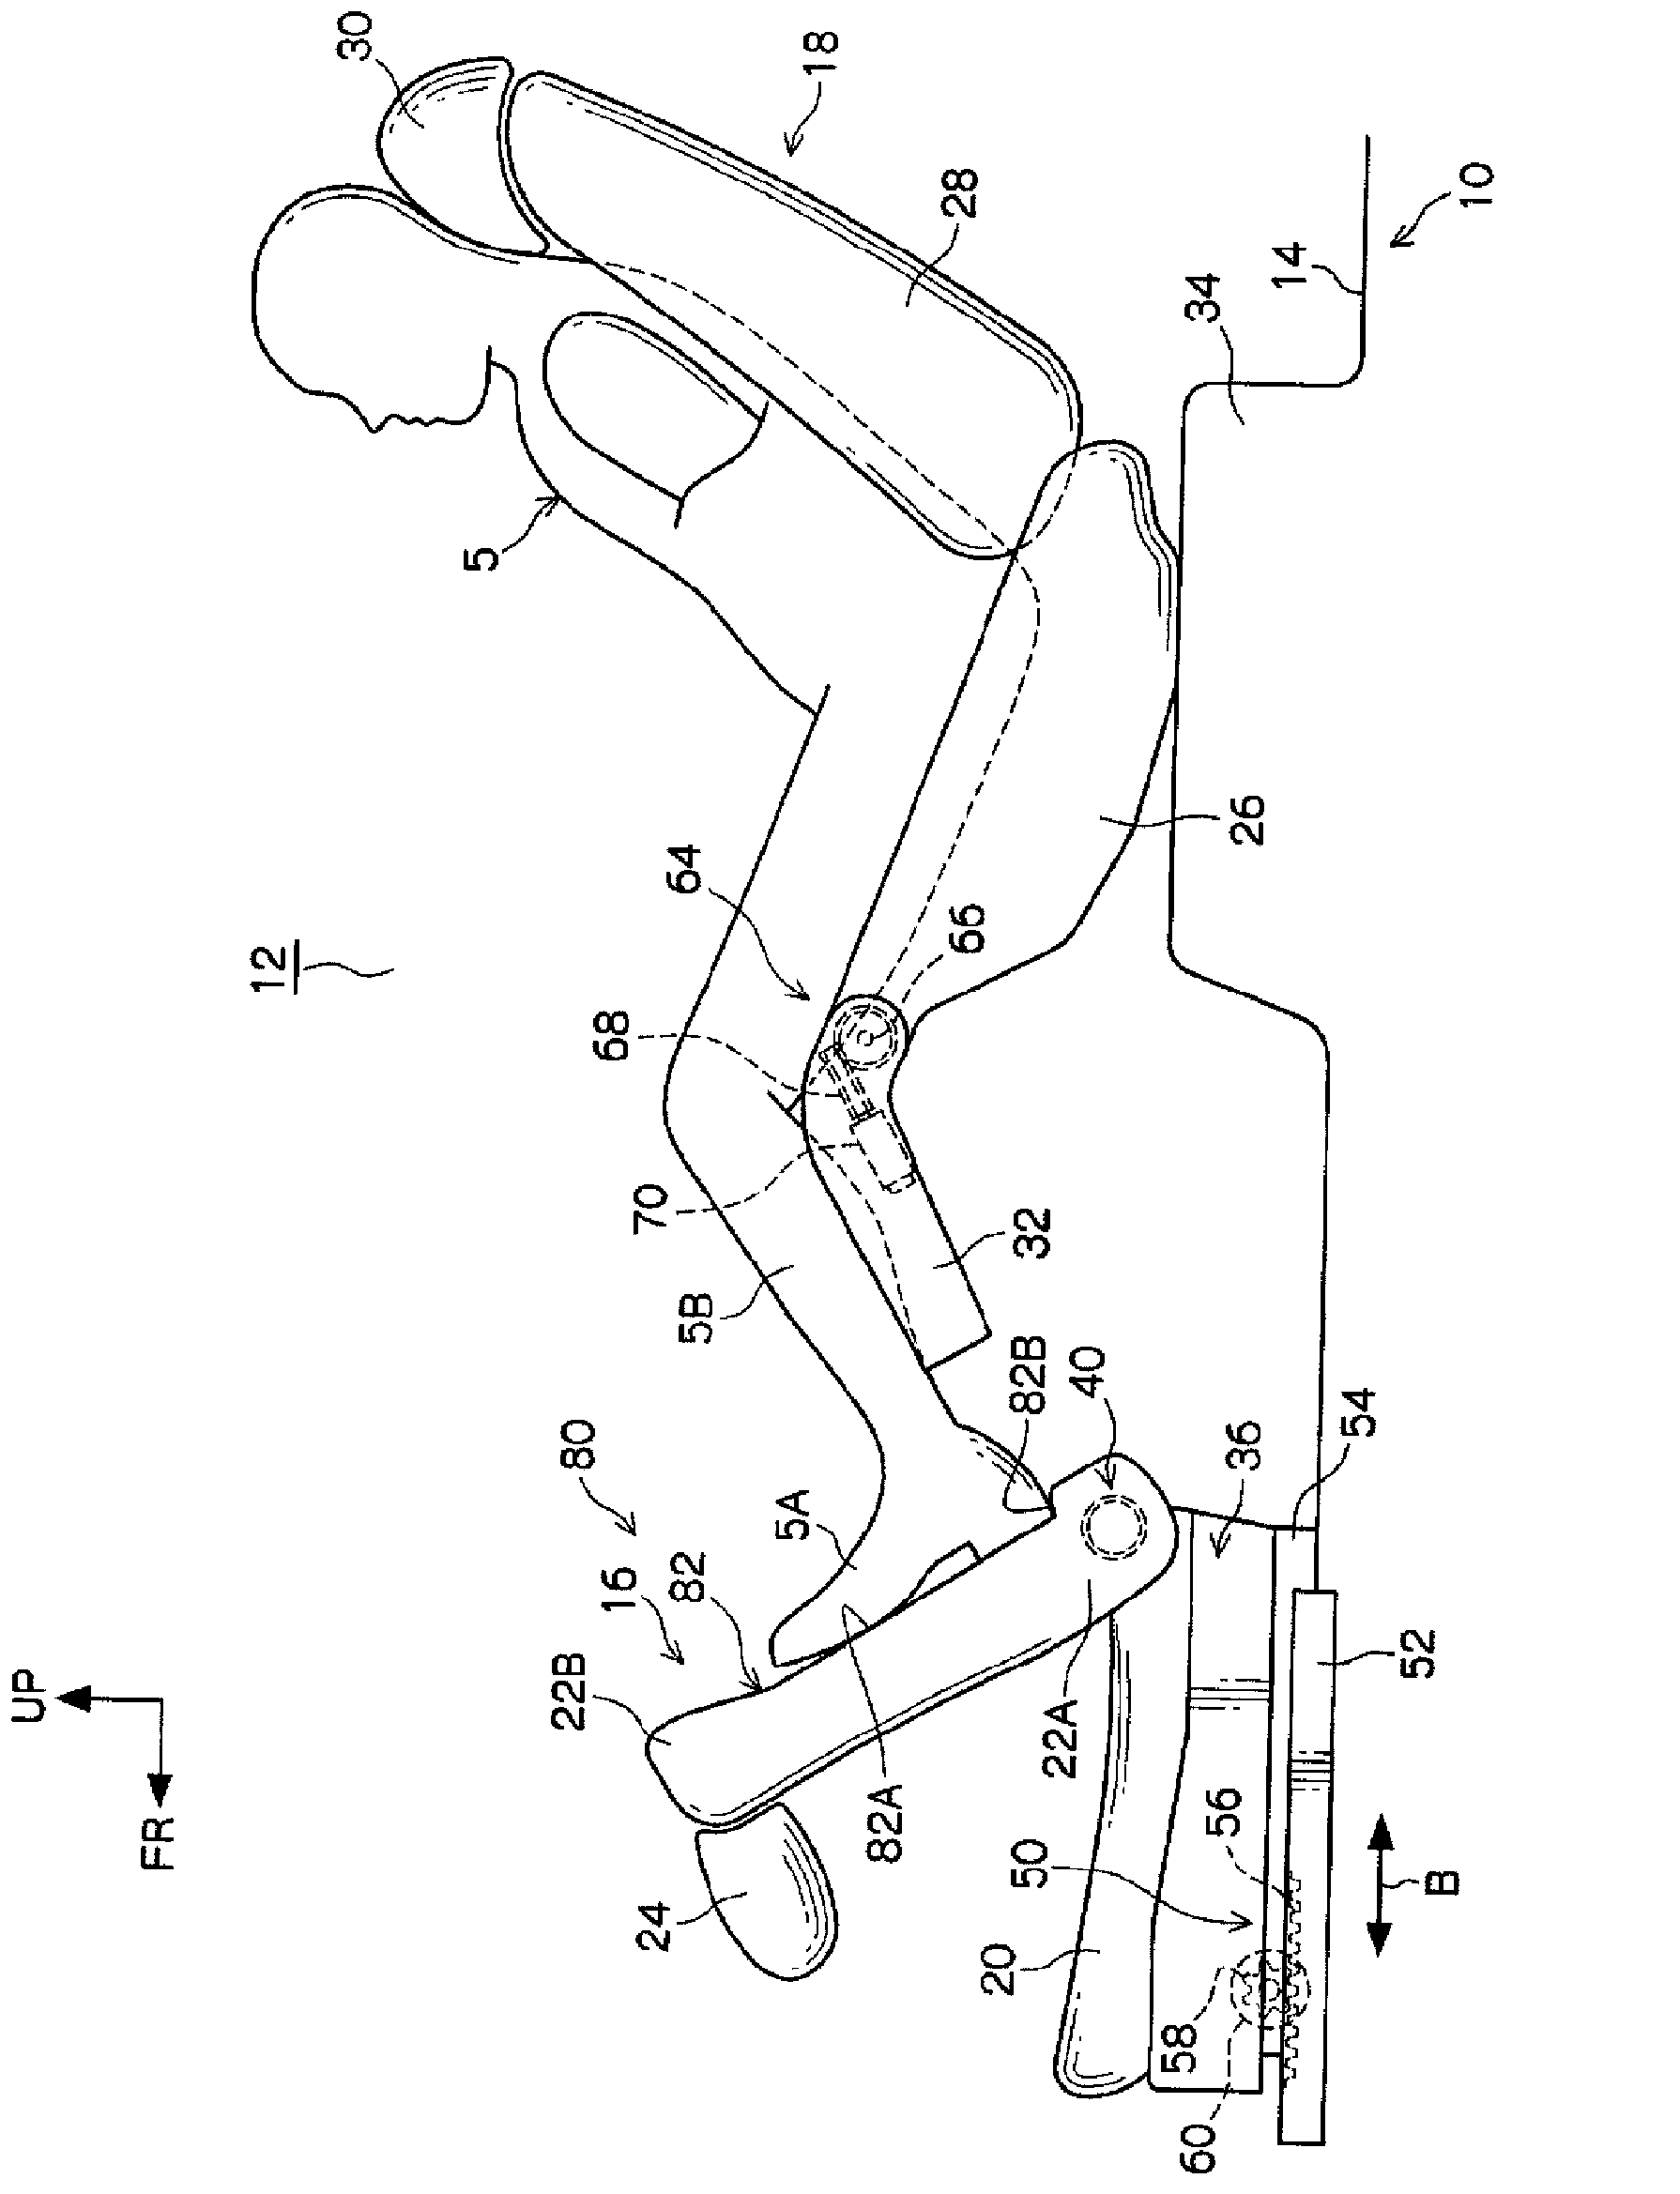 Footrest system for vehikcle